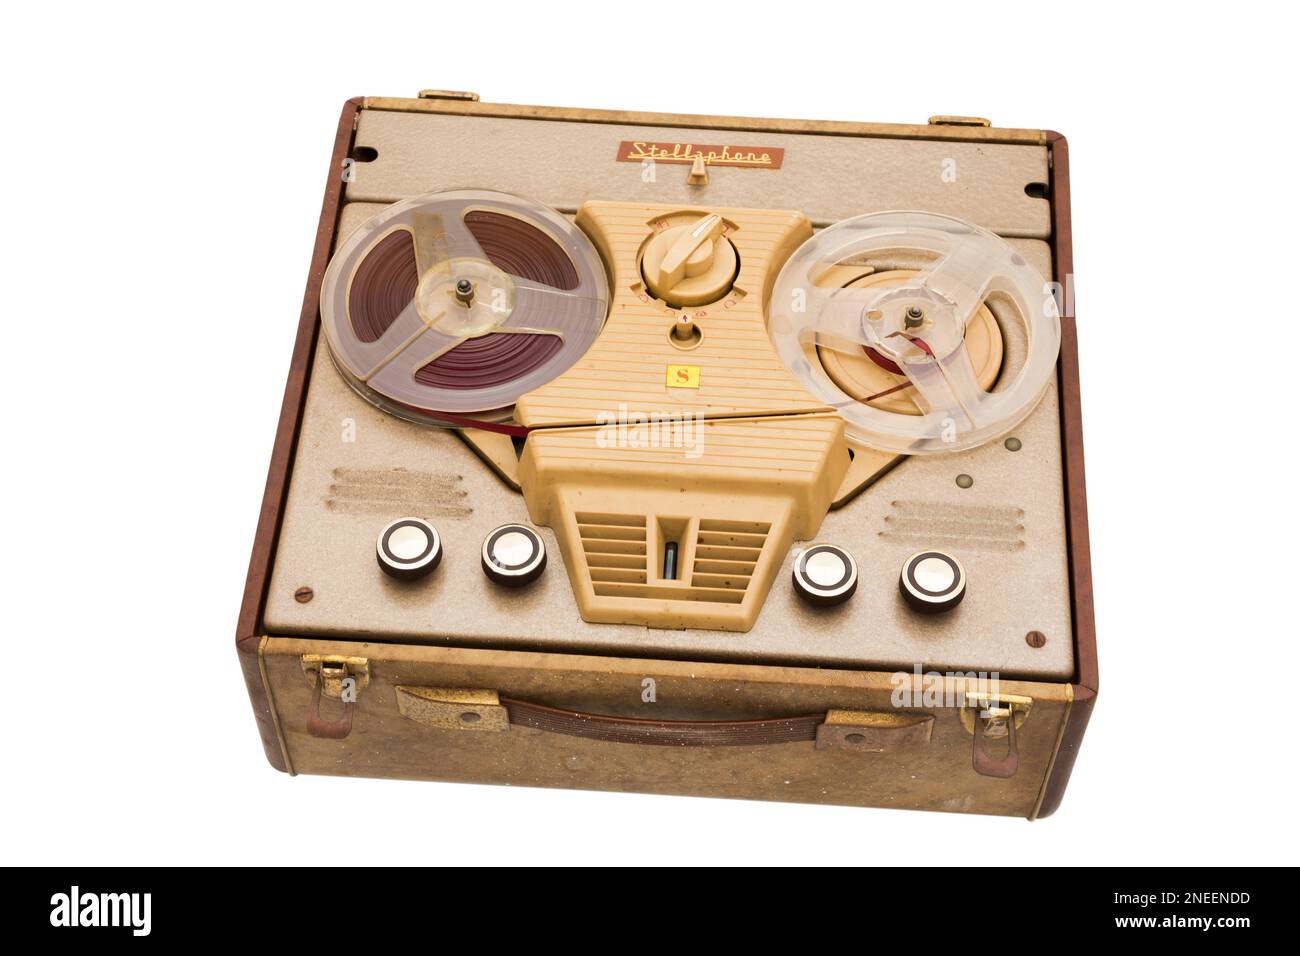 Enregistreur de bobine à bobine de marque Stellaphone équipé d'une bande audio haute fidélité Synchrotape typique des équipements 1950s et 1960s. Royaume-Uni. (133) Banque D'Images